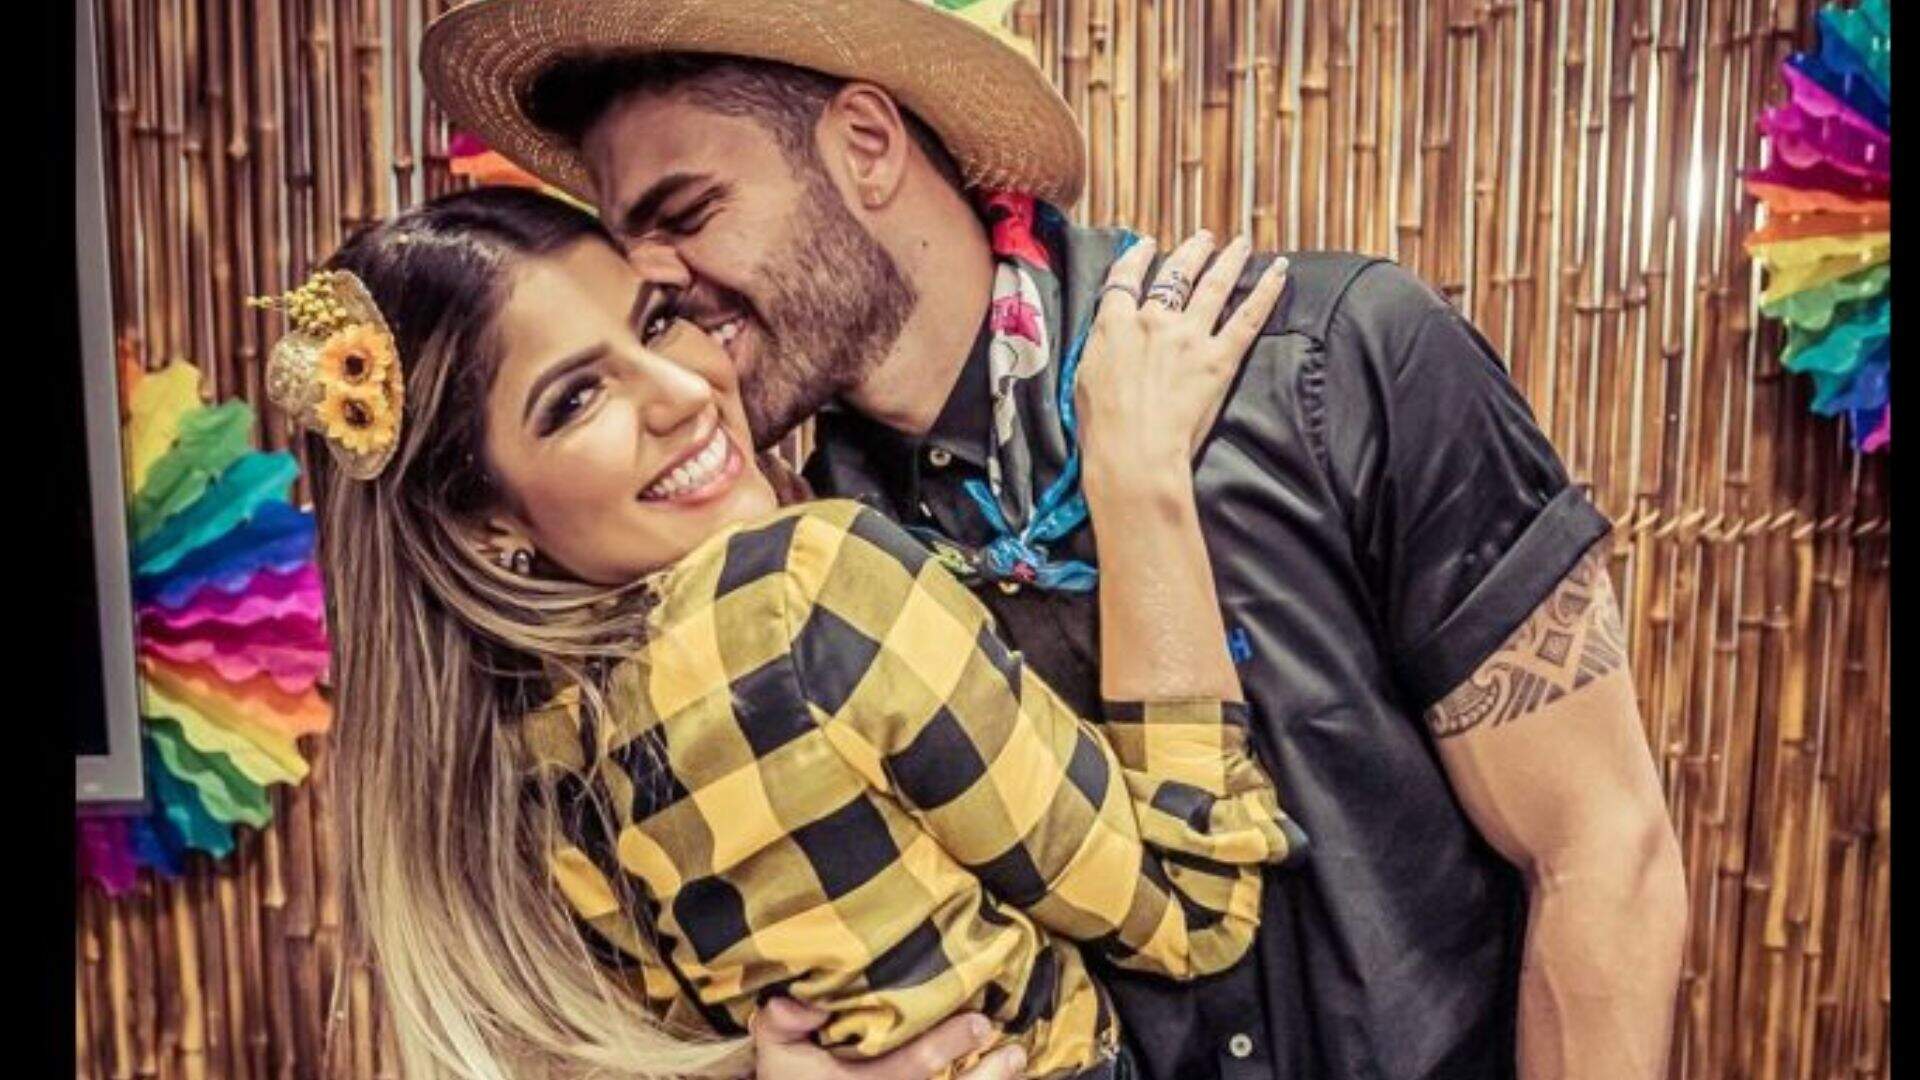 Hariany Almeida e DJ Netto fazem revelação chocante sobre o relacionamento: “Com uma semana” - Metropolitana FM